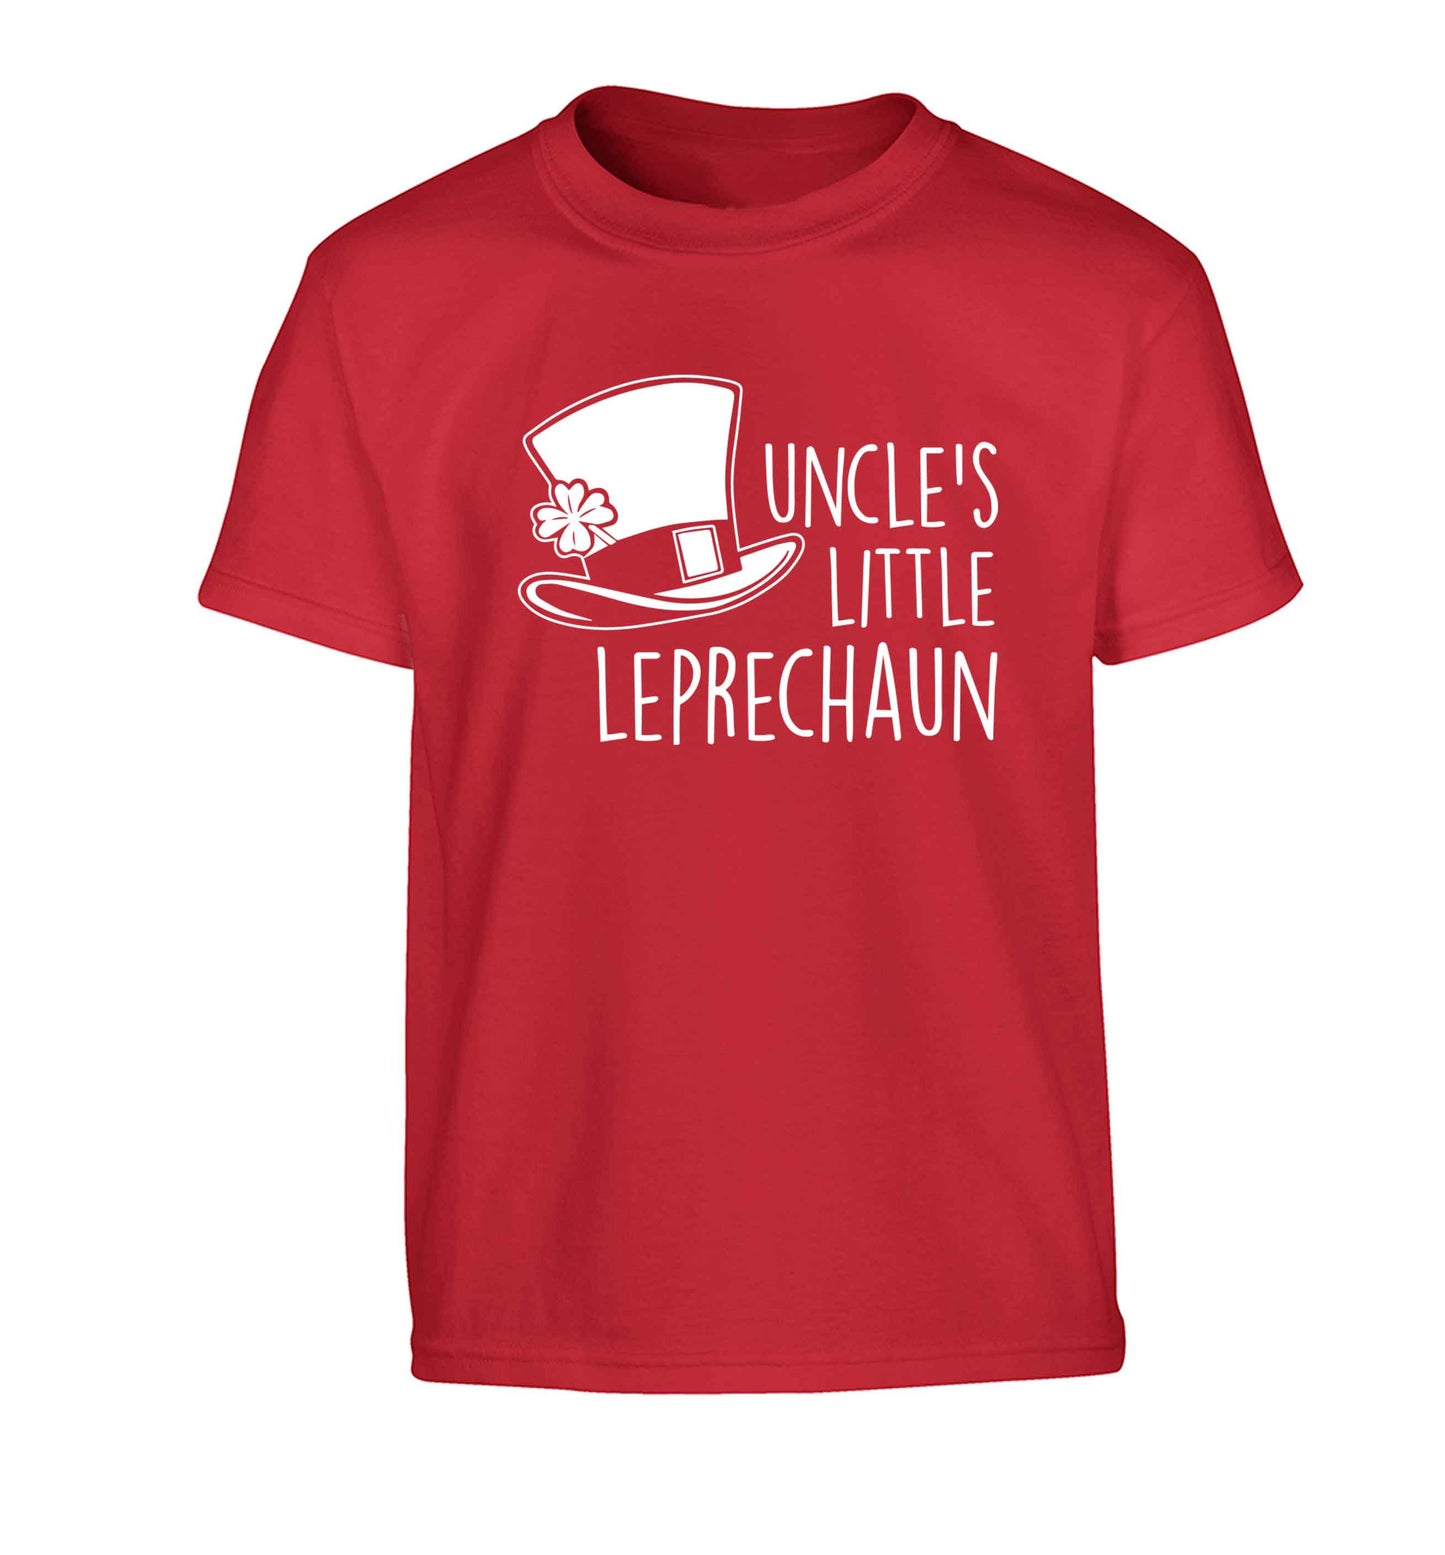 Uncles little leprechaun Children's red Tshirt 12-13 Years